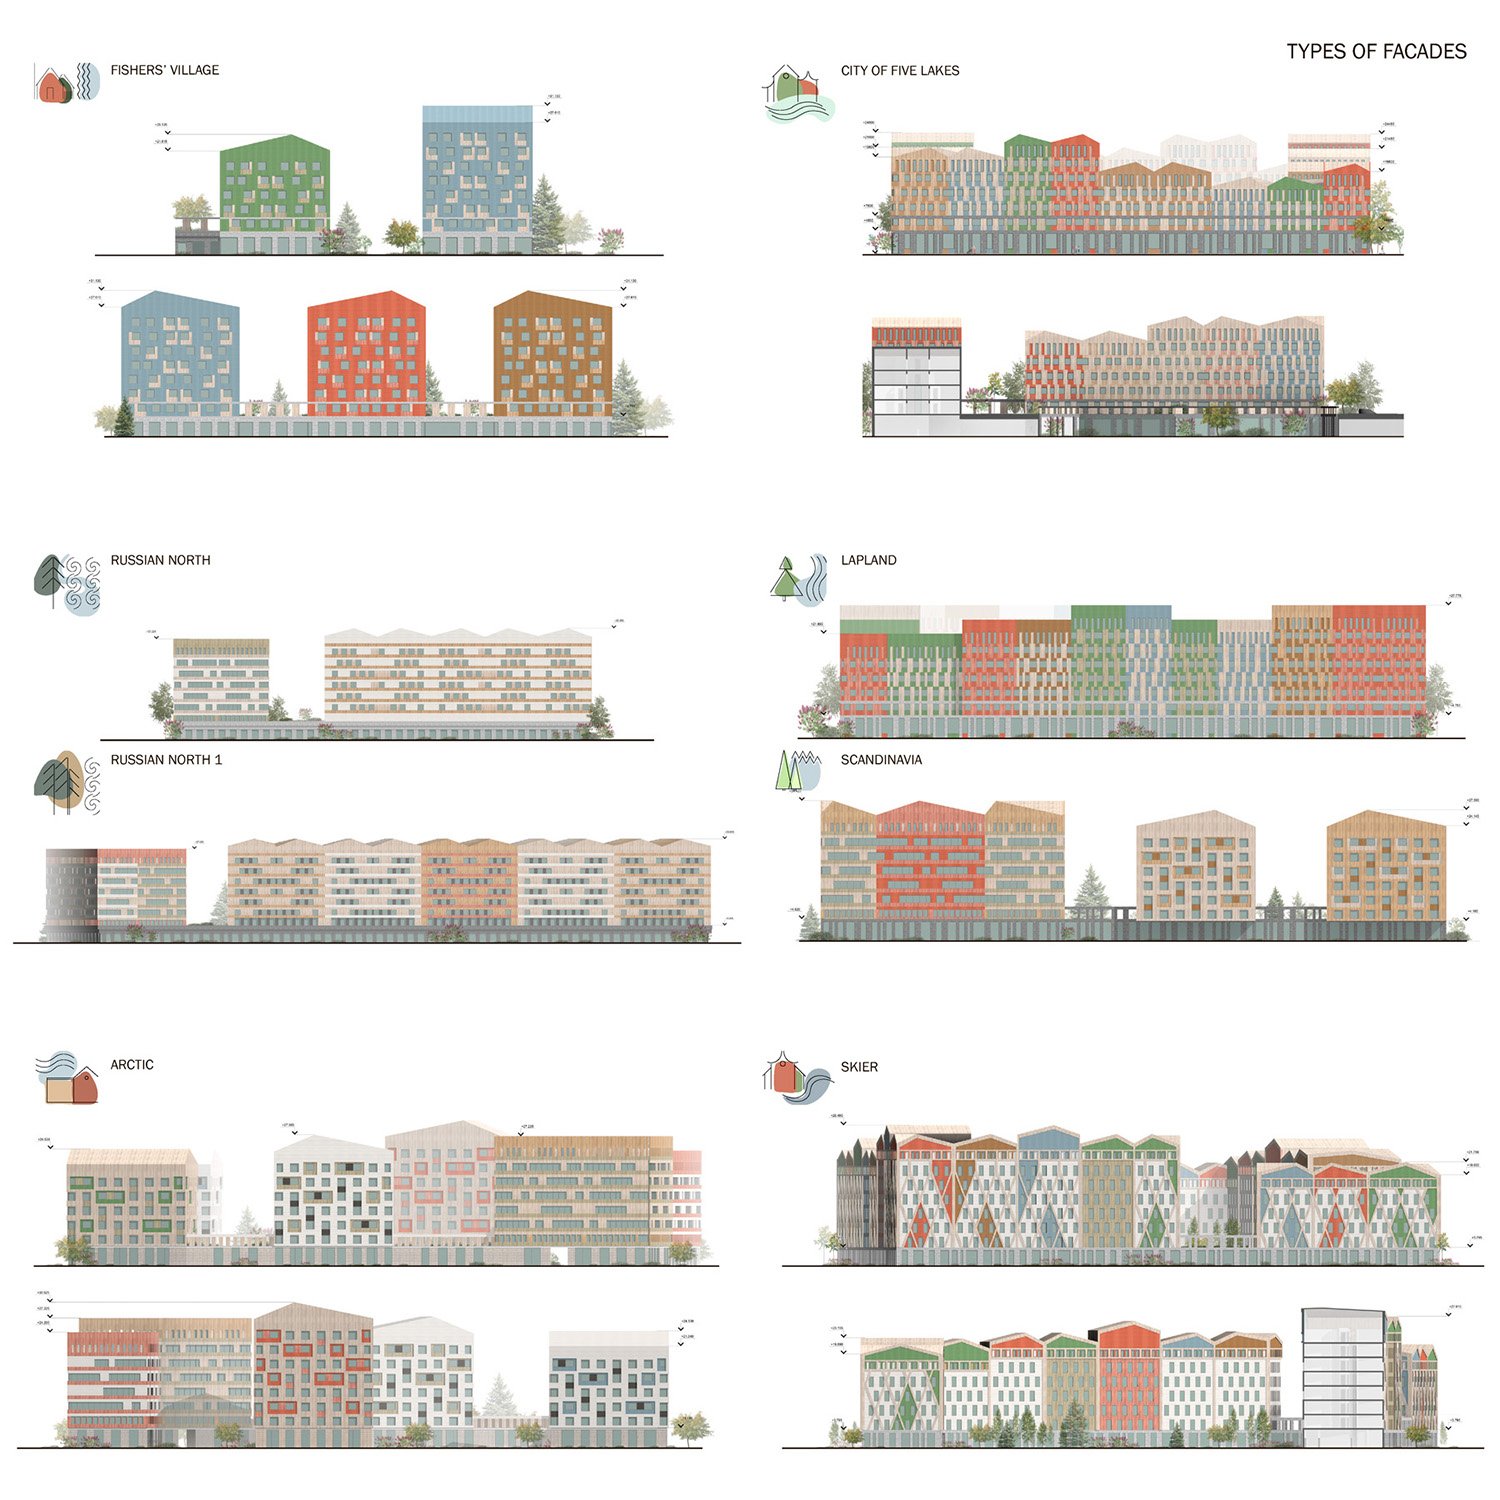 Types of facades | Types of facades